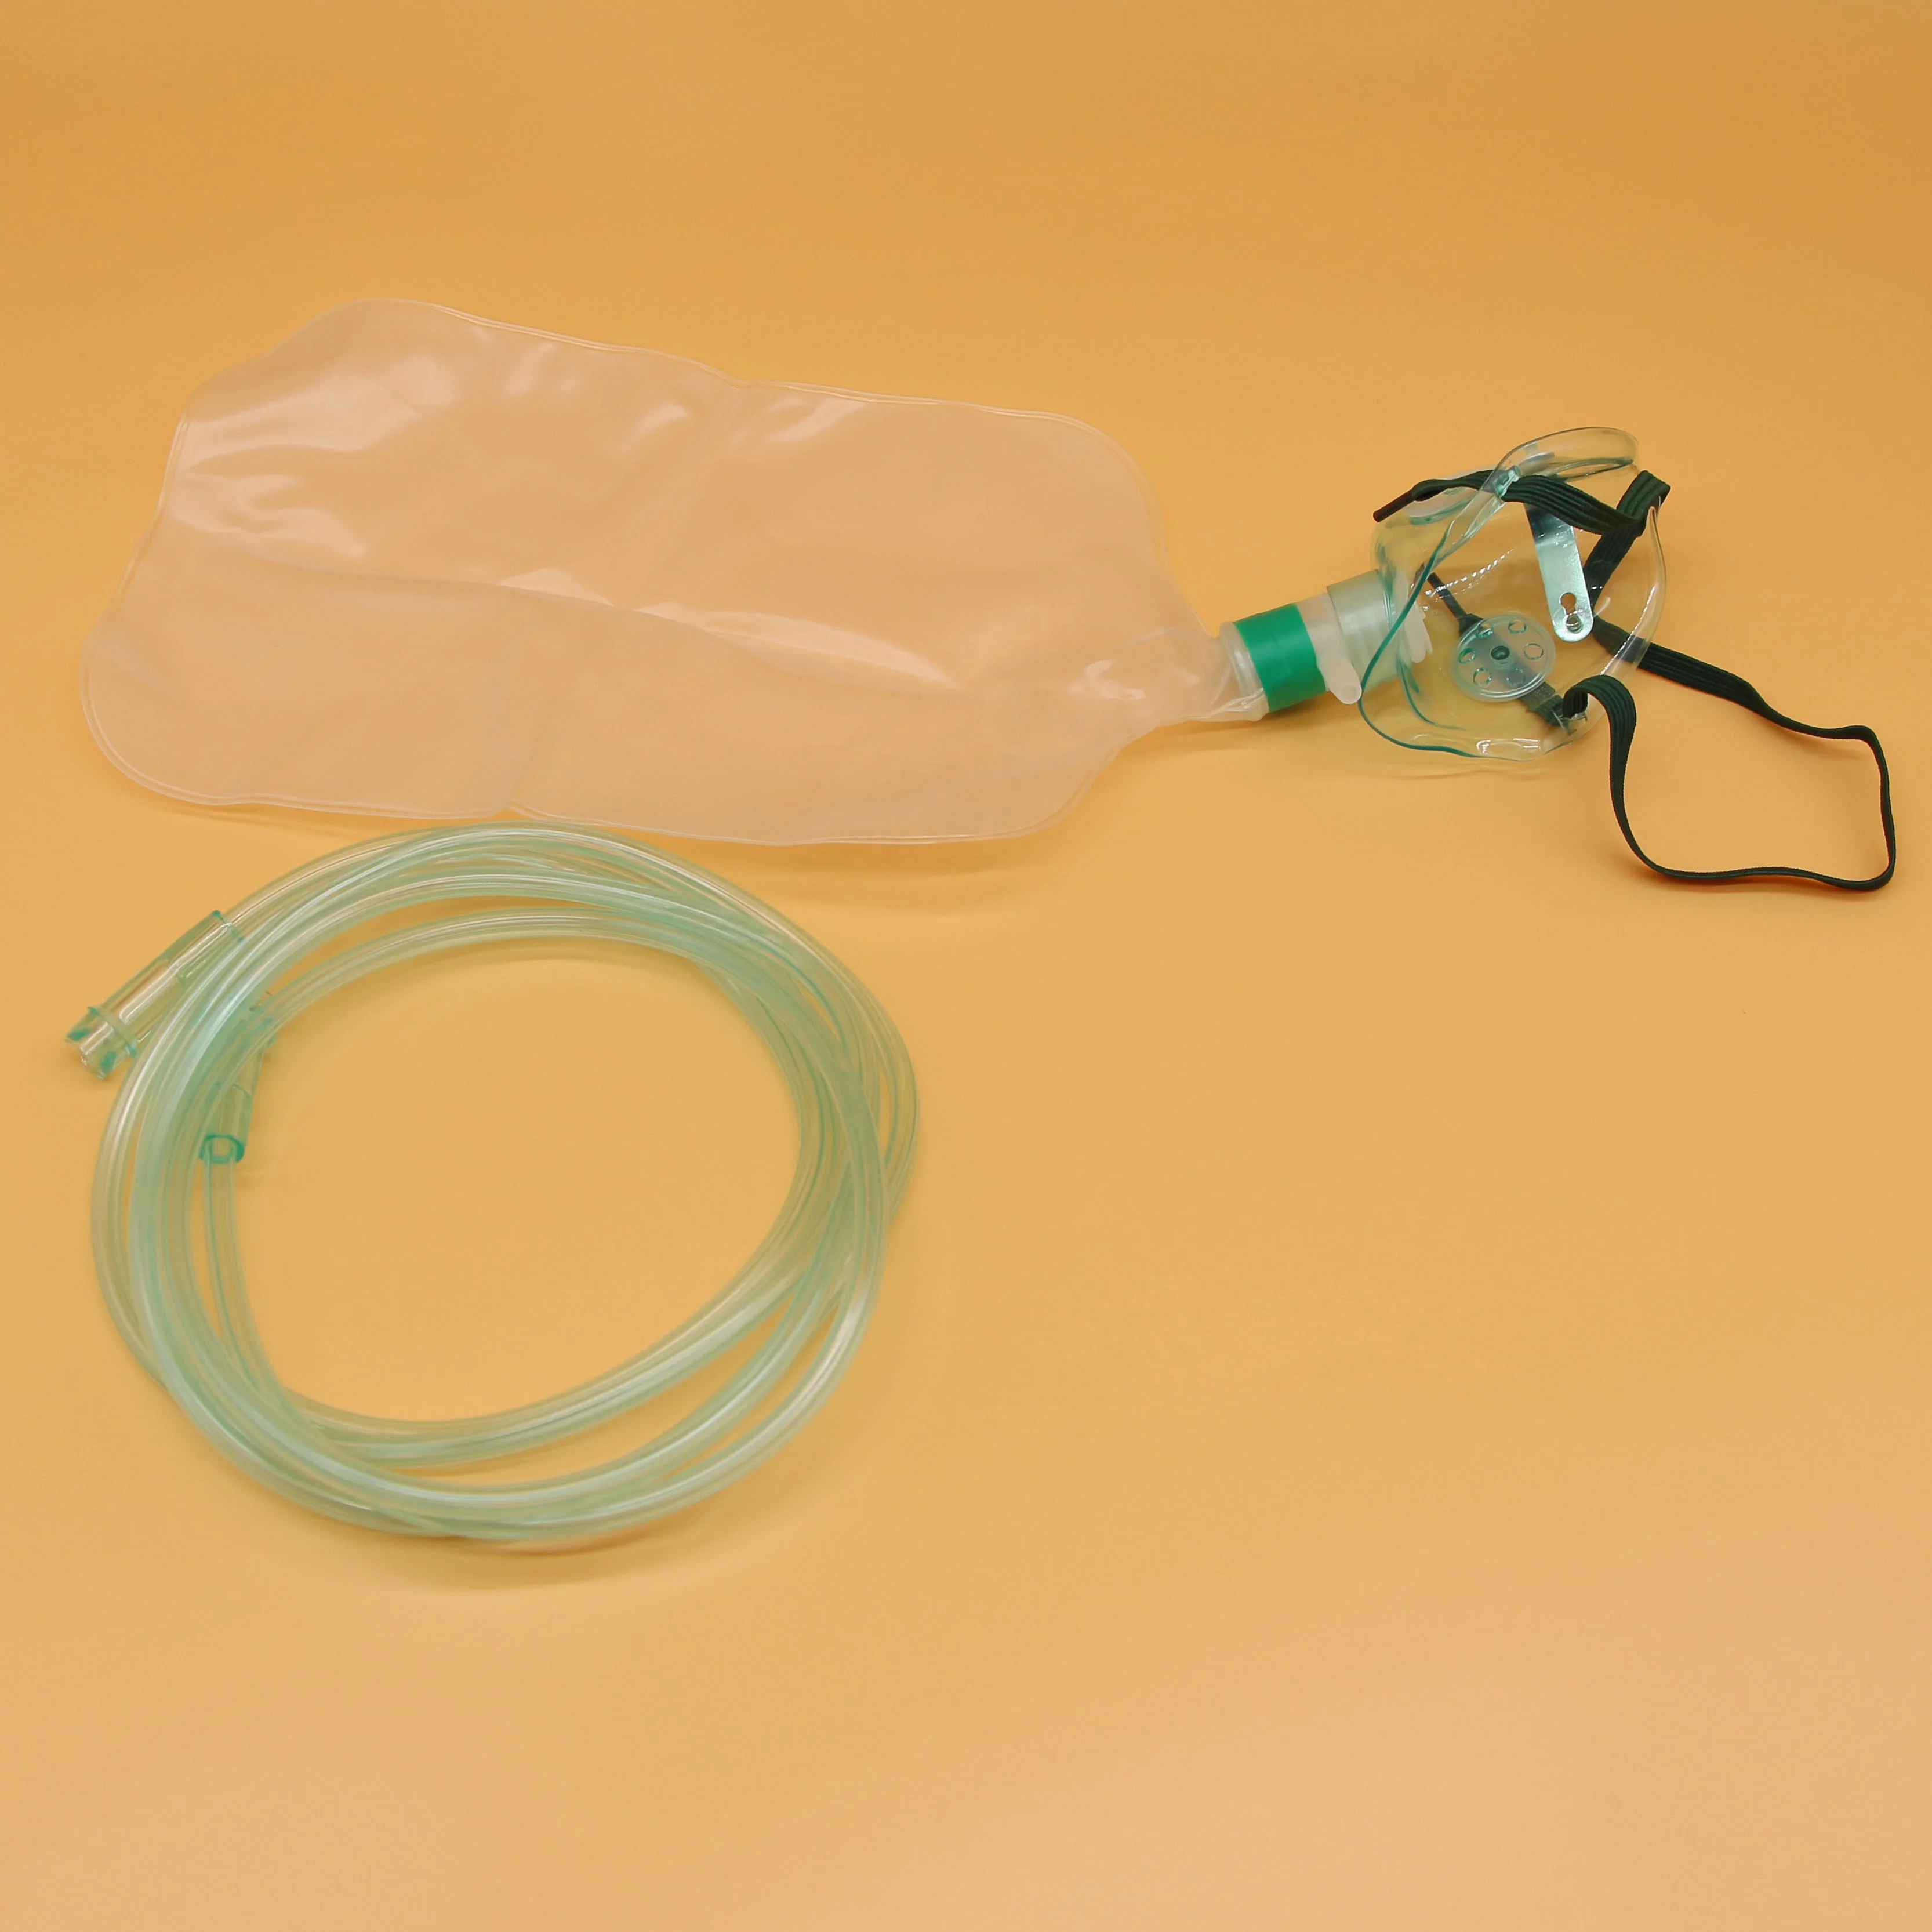 医用过滤器 hme 一次性气管造口 hme 过滤器儿童 hme 过滤器